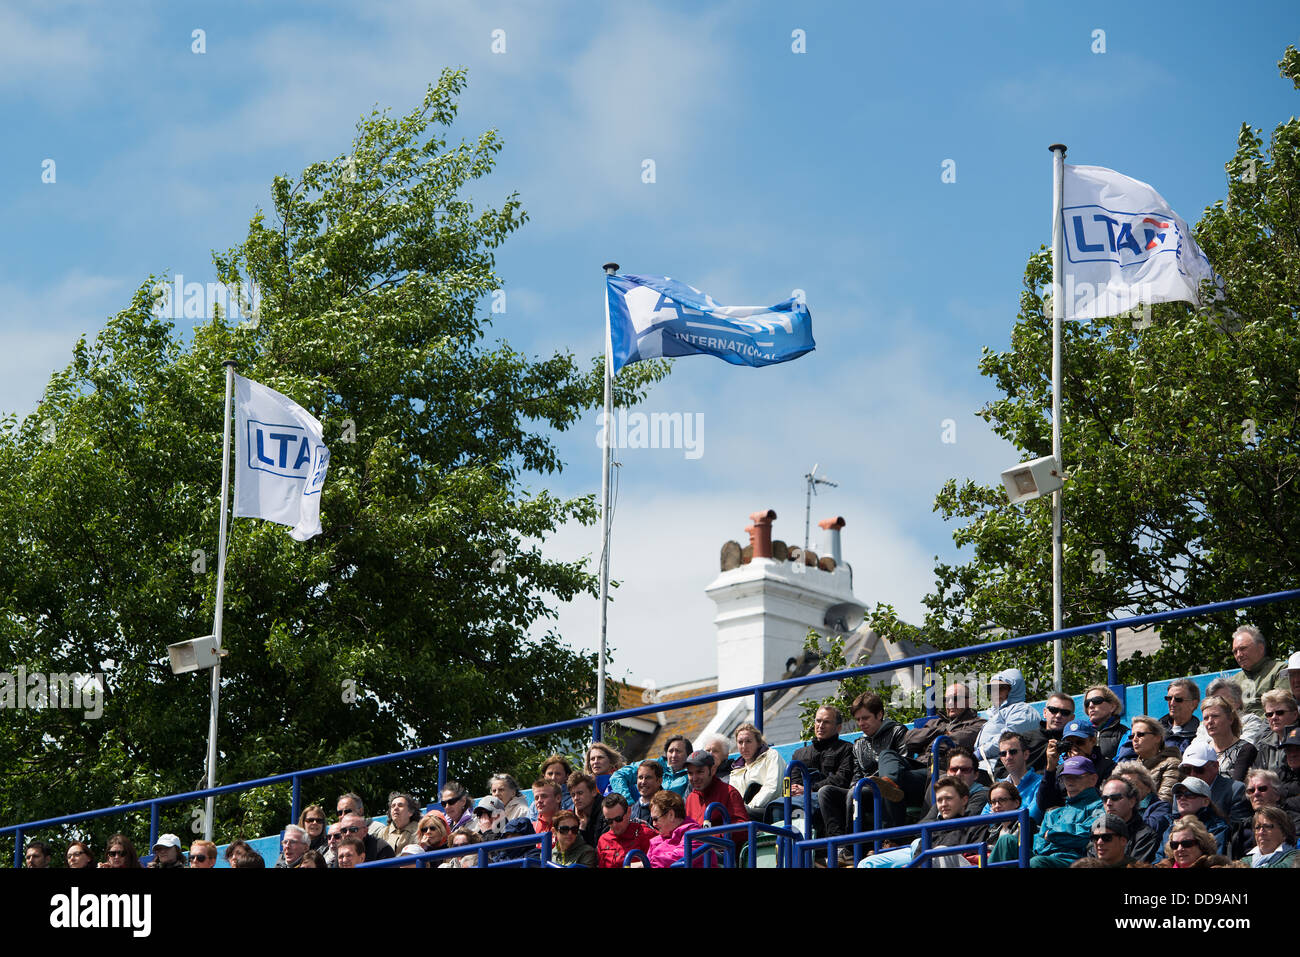 LTA-Aegon Fahne flattern im Wind über dem Zuschauer an einem luftigen Sommertag bei den Aegon International-Tennis-Turnier Stockfoto